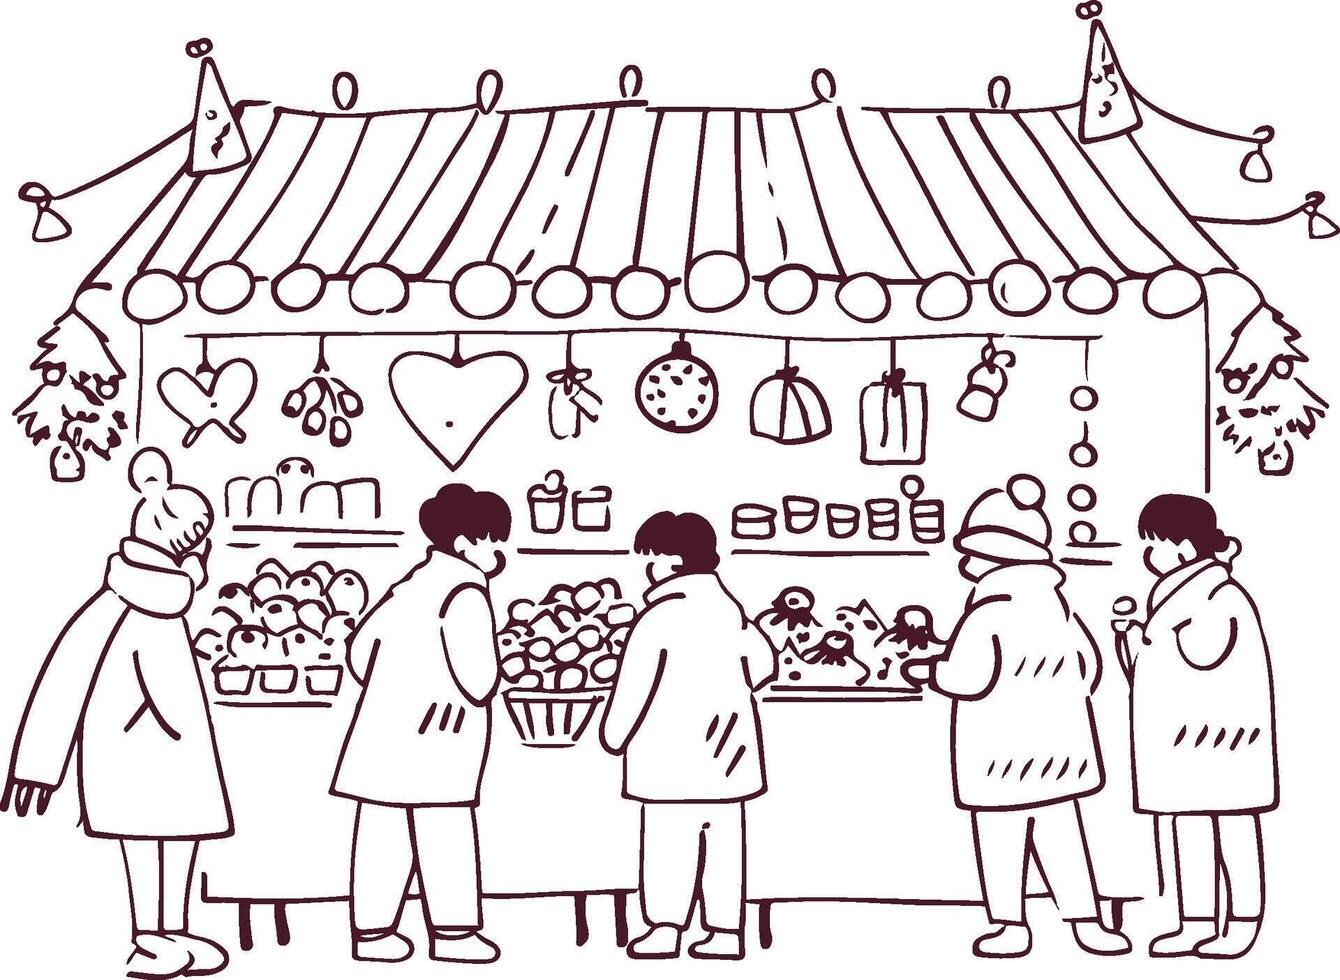 gemütlich Winter Markt Szene mit Menschen Einkaufen zum Urlaub Dekorationen und Leckereien vektor